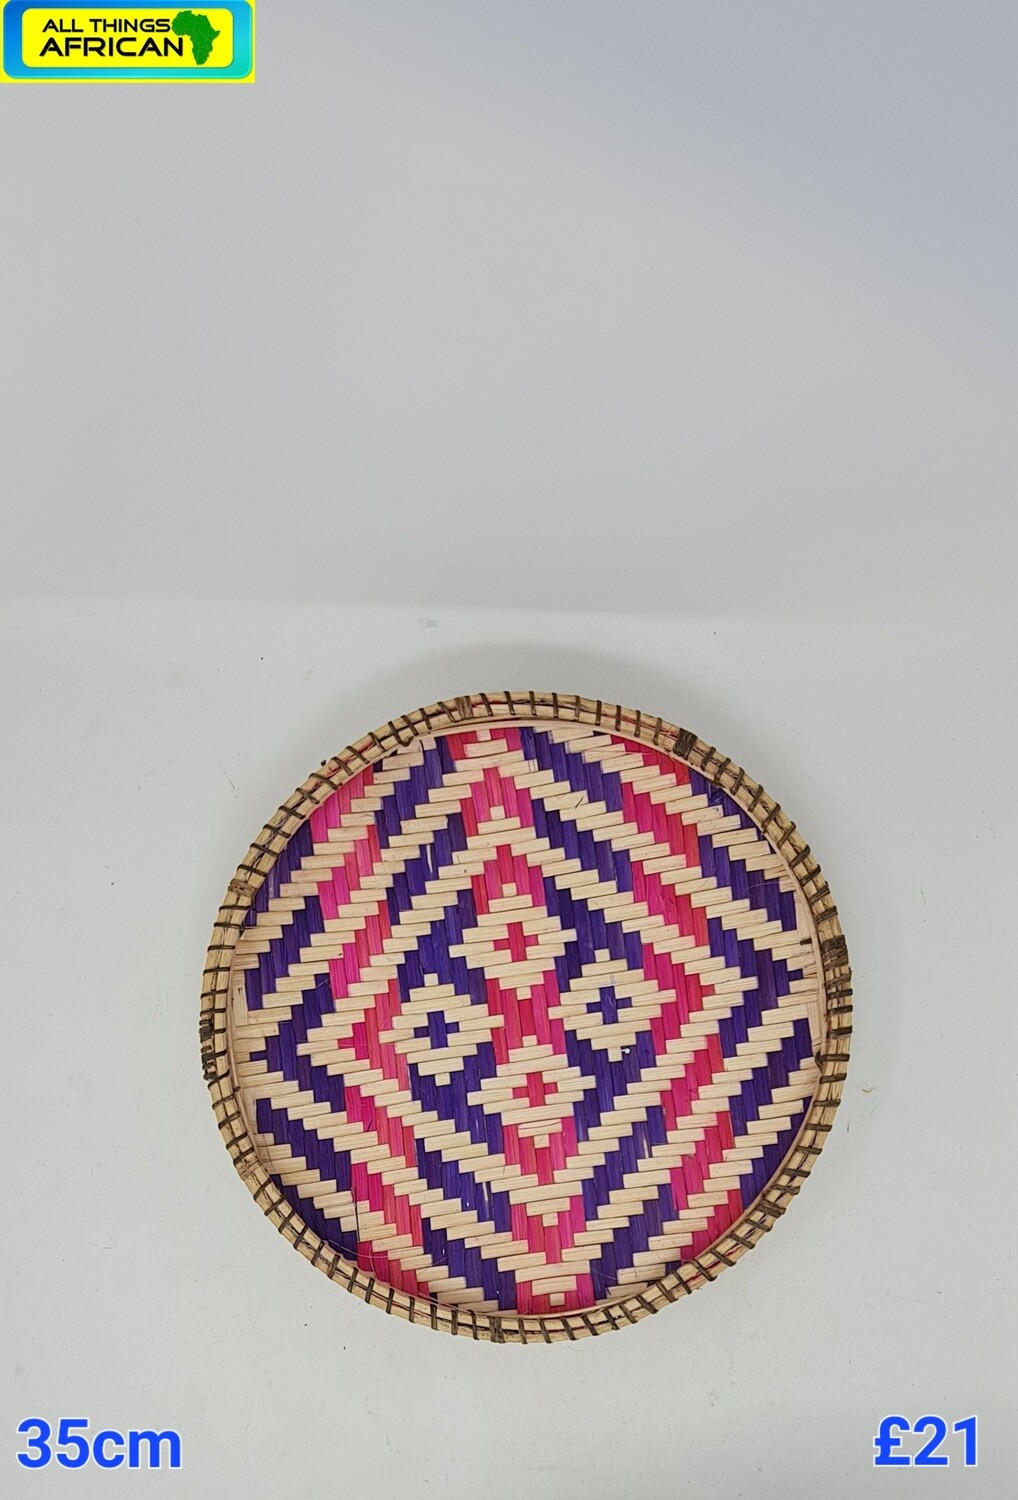 Ungo Hand-Weaved Basket - 35cm